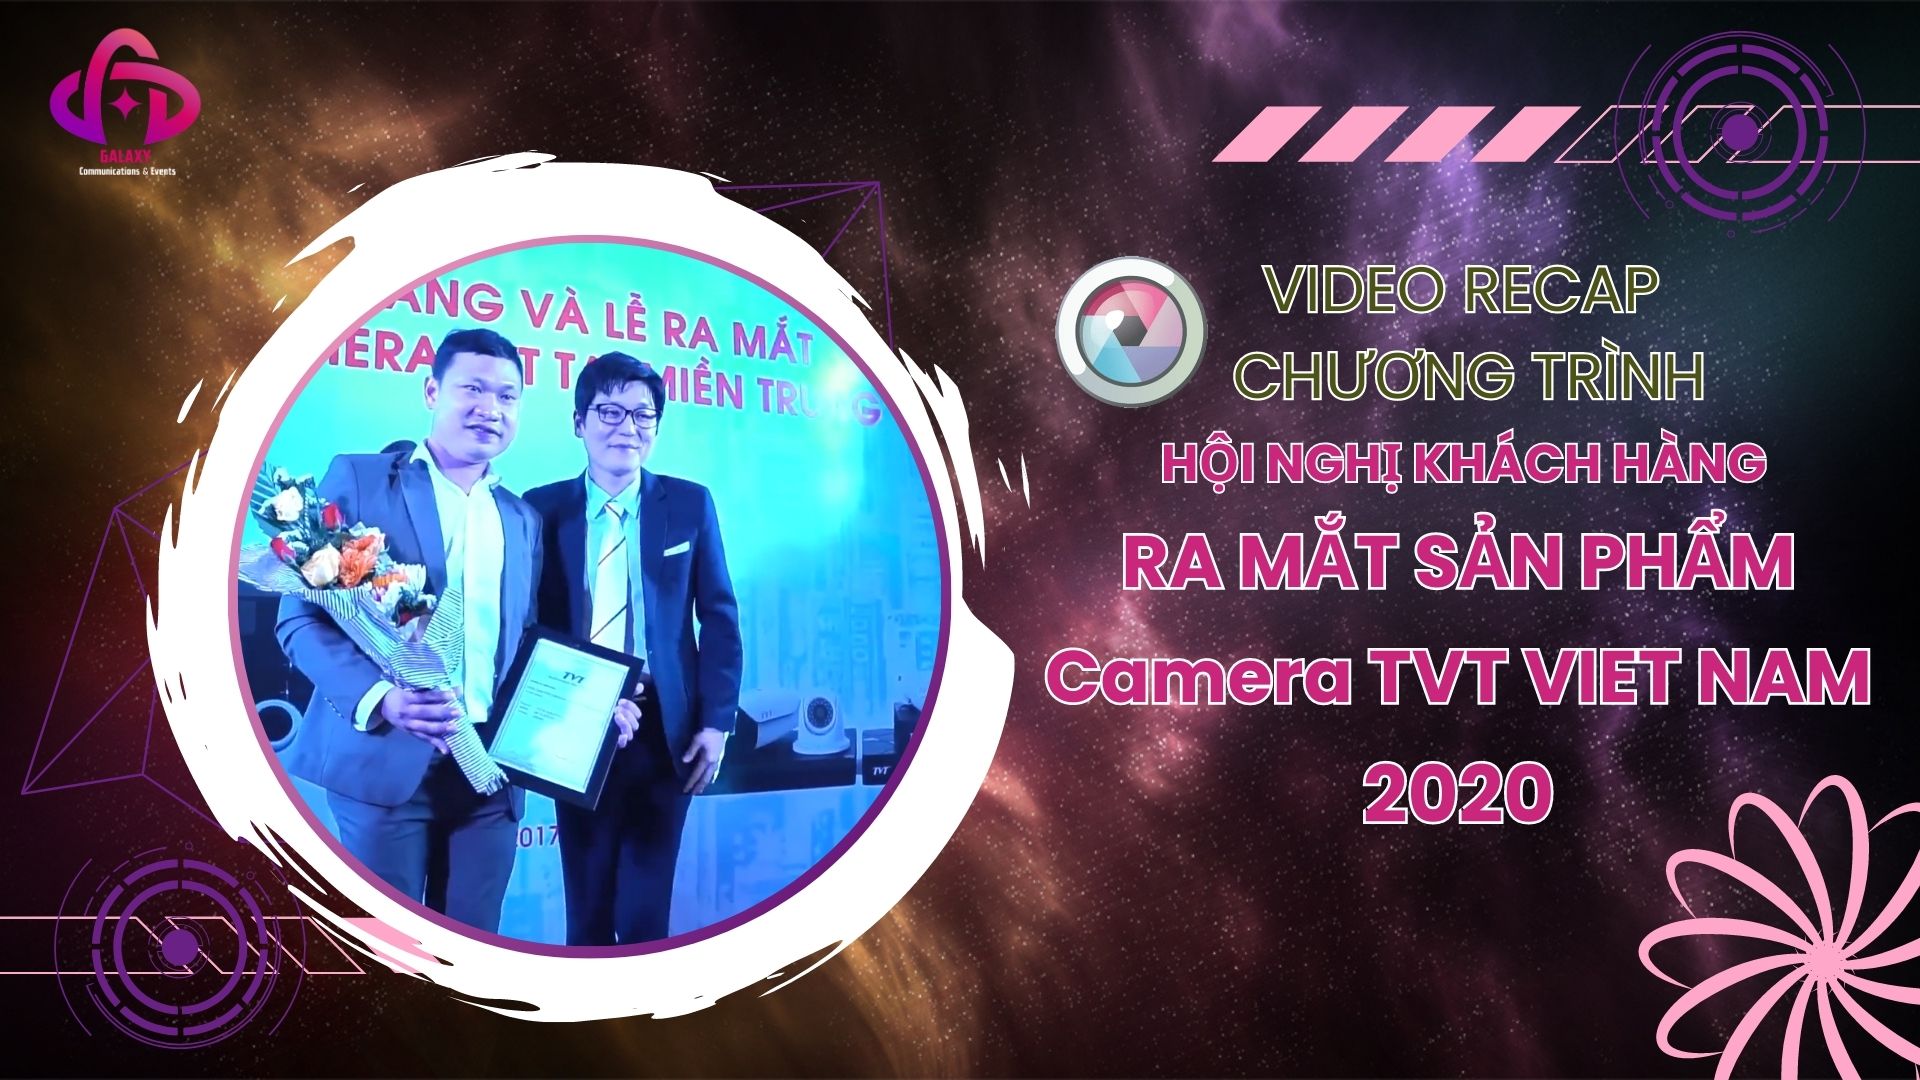 [Official Video Recap] Hội nghị khách hàng ra mắt sản phẩm Camera TVT Viet Nam